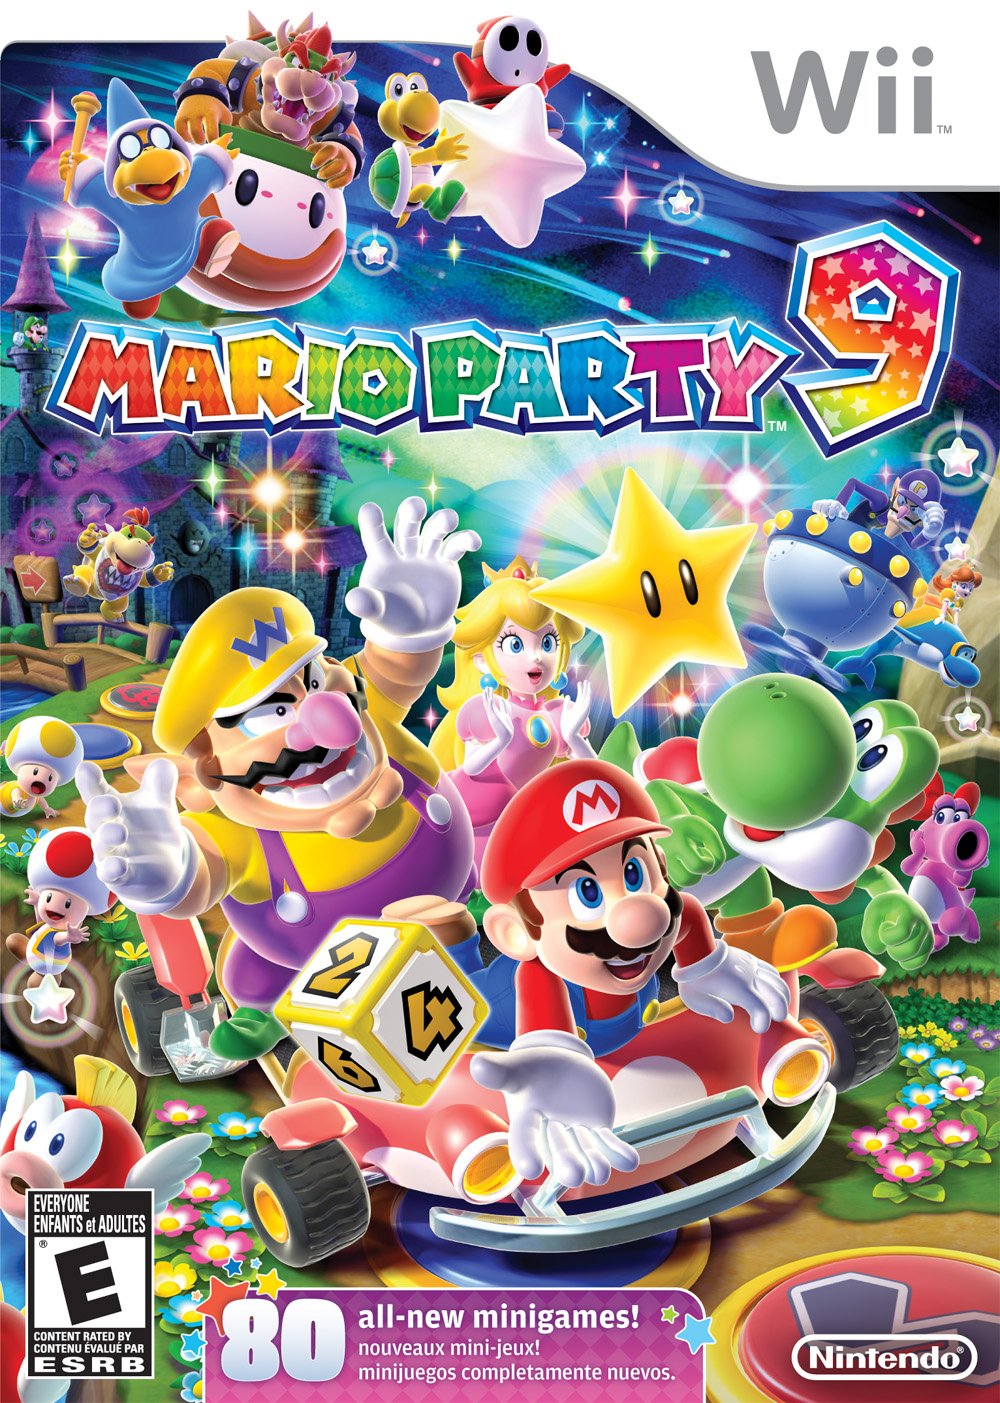 Crimineel onregelmatig Serie van Mario Party 9 - Super Mario Wiki, the Mario encyclopedia